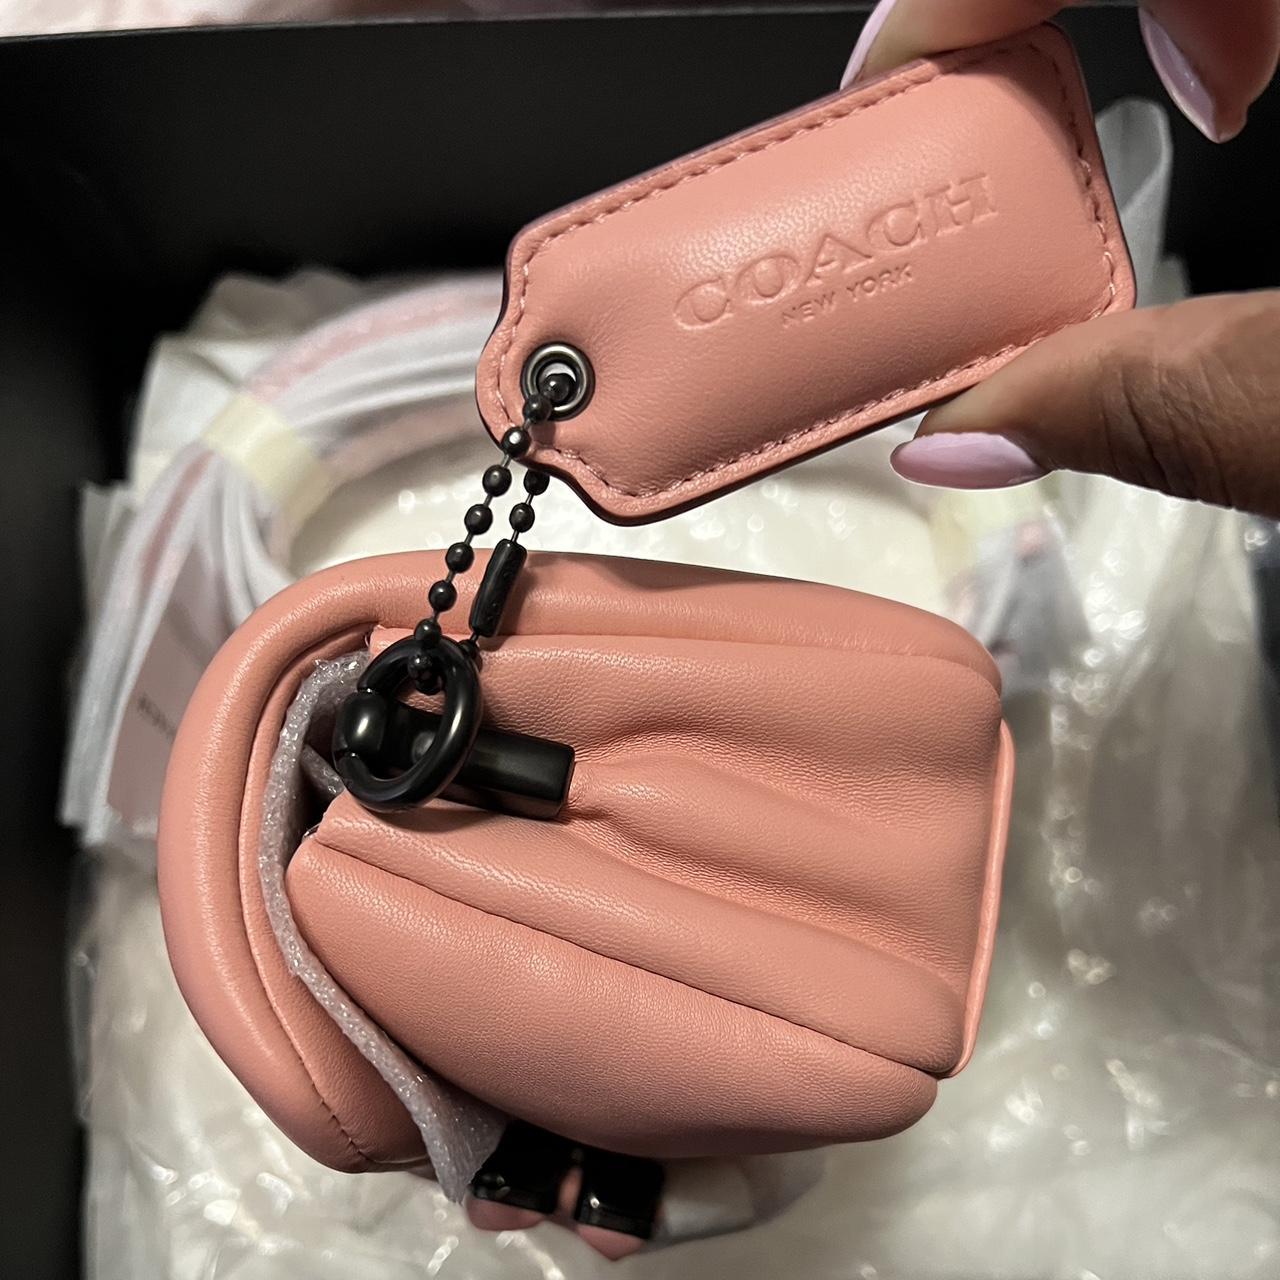 Coach Pillow Tabby Shoulder Bag 18 Cute pillow pink - Depop